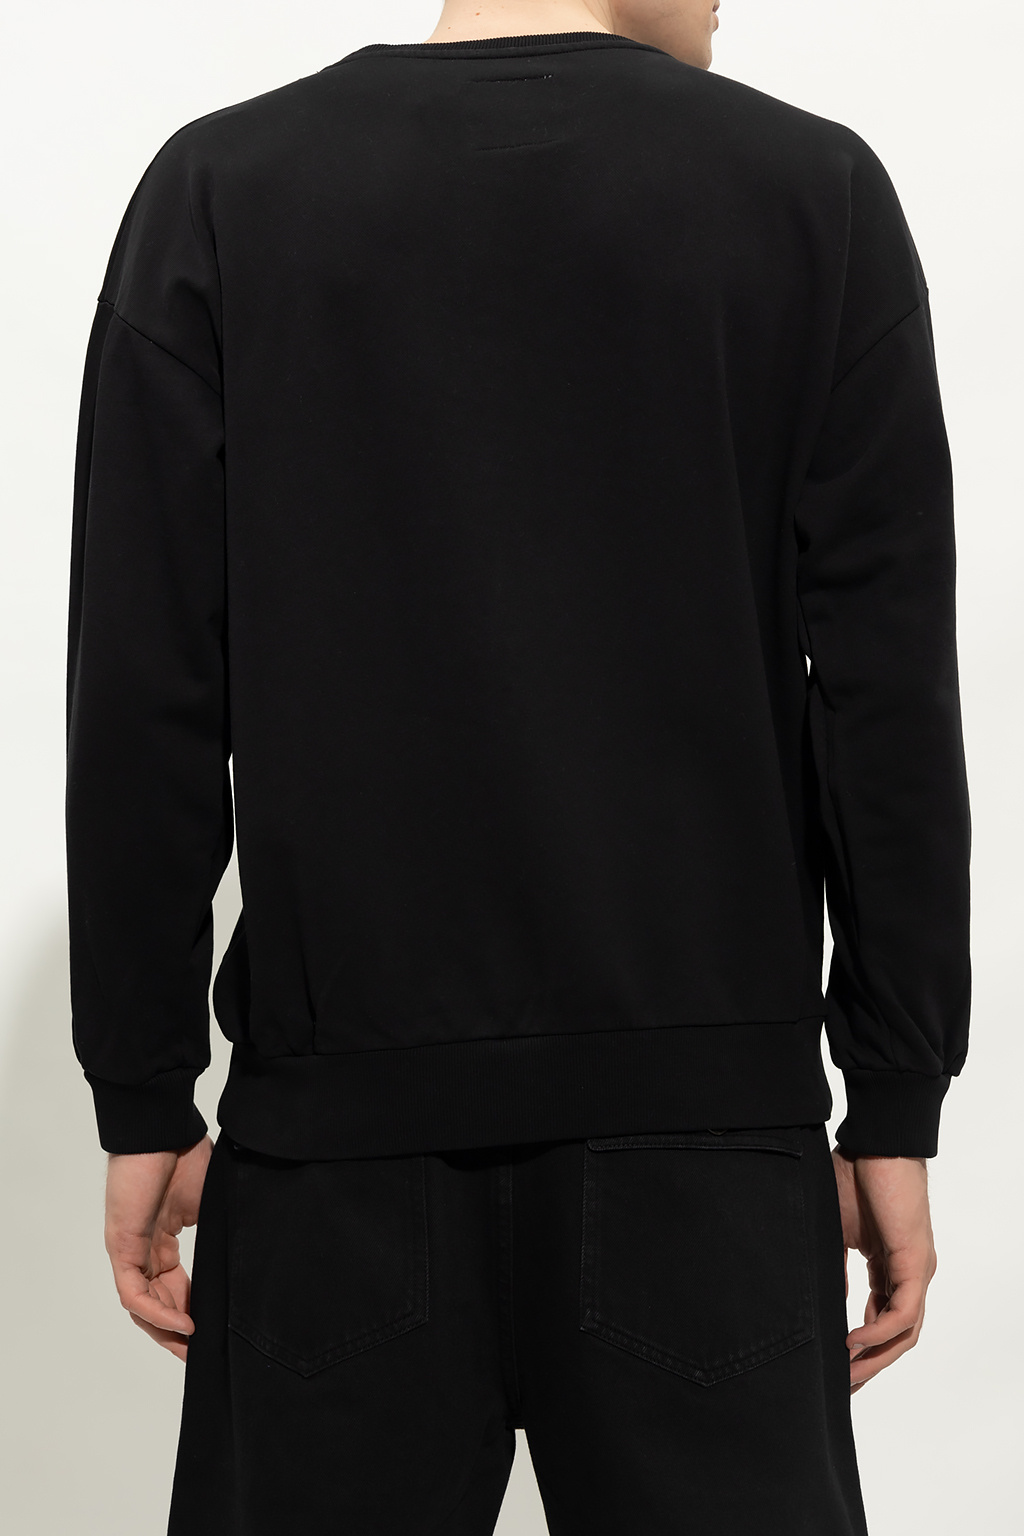 Philippe Model ‘Bellae’ sweatshirt